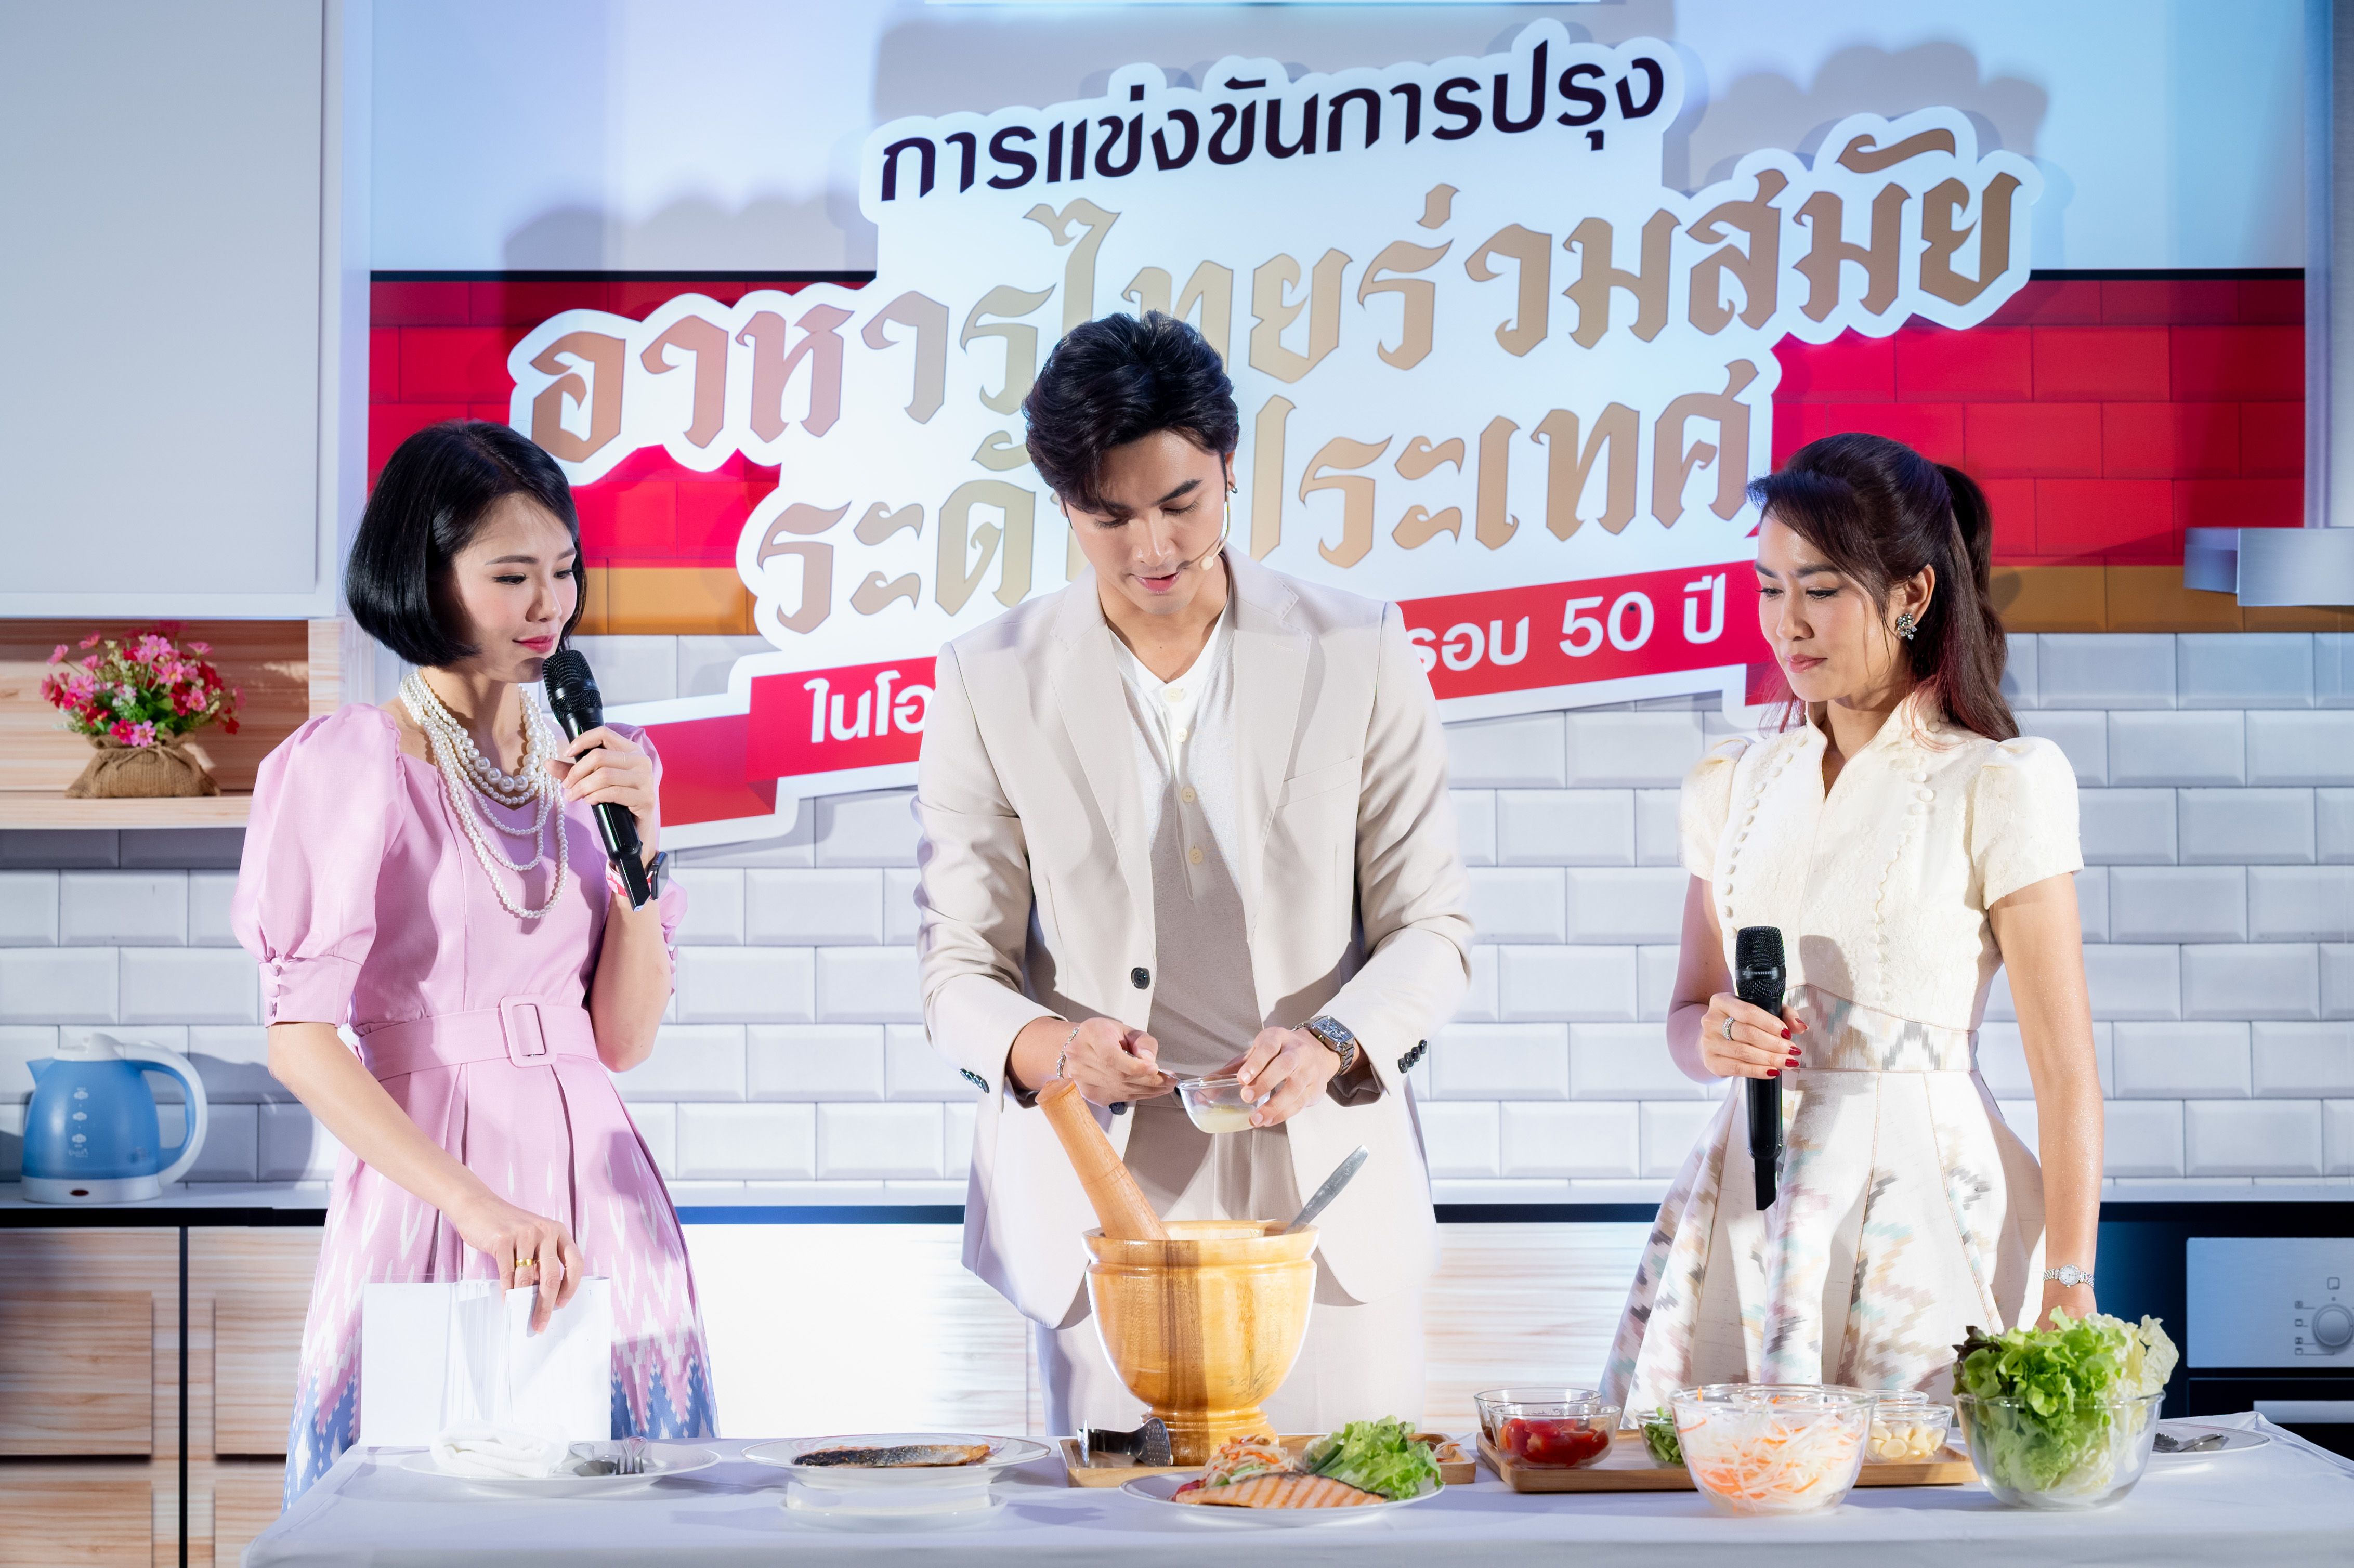 ‘เอส แอนด์ พี’ ผู้นำธุรกิจร้านอาหารไทย จัดงานแถลงข่าว  ‘การแข่งขันการปรุงอาหารไทยร่วมสมัยระดับประเทศ ในโอกาส S&P ครบรอบ 50 ปี’  เพื่อยกระดับอุตสาหกรรมอาหารไทยสู่ระดับสากล